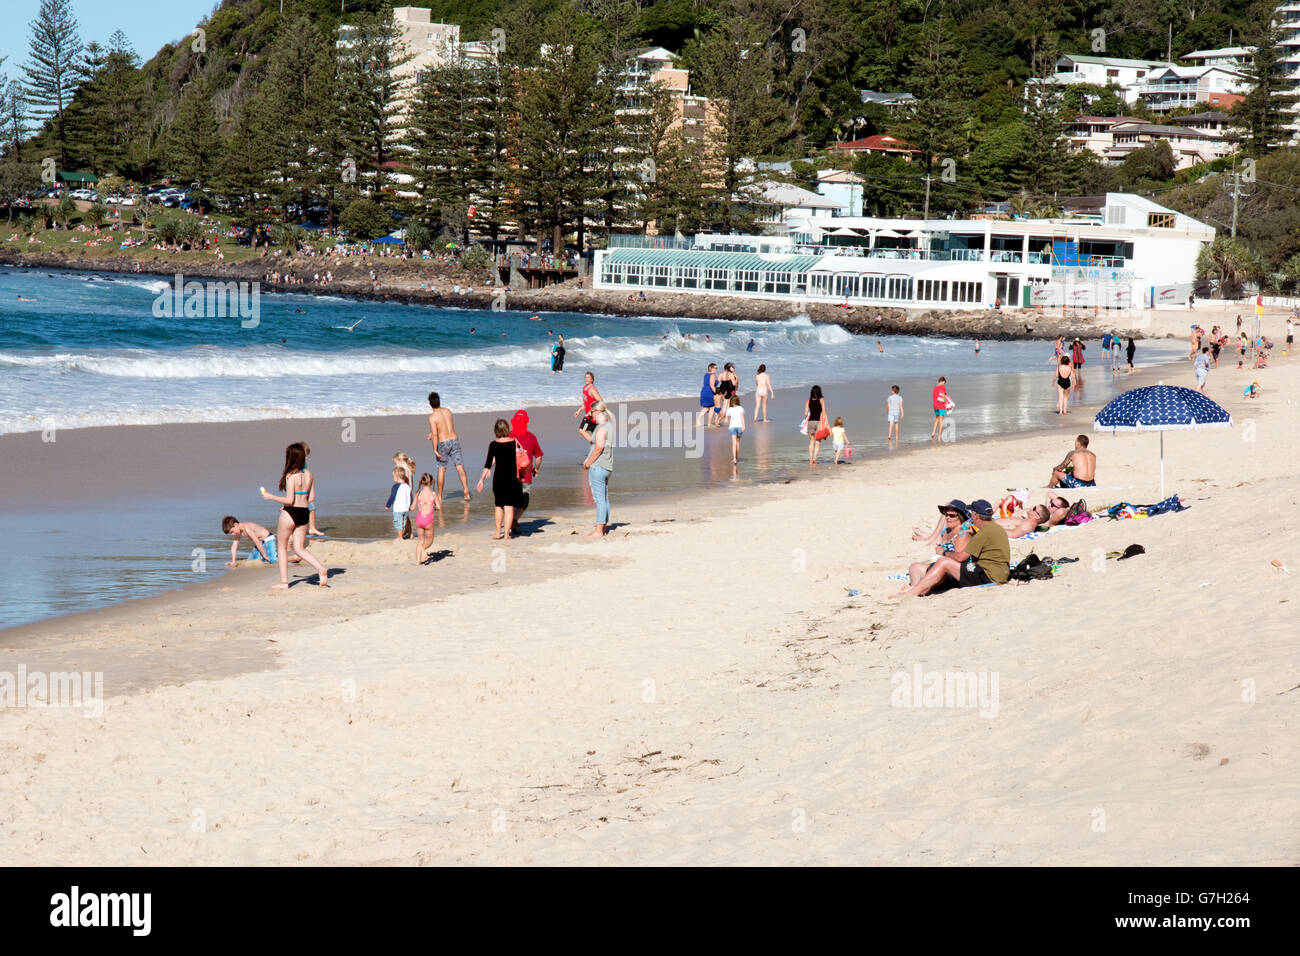 La playa de Burleigh Heads en la región de la Costa de Oro de Australia Foto de stock